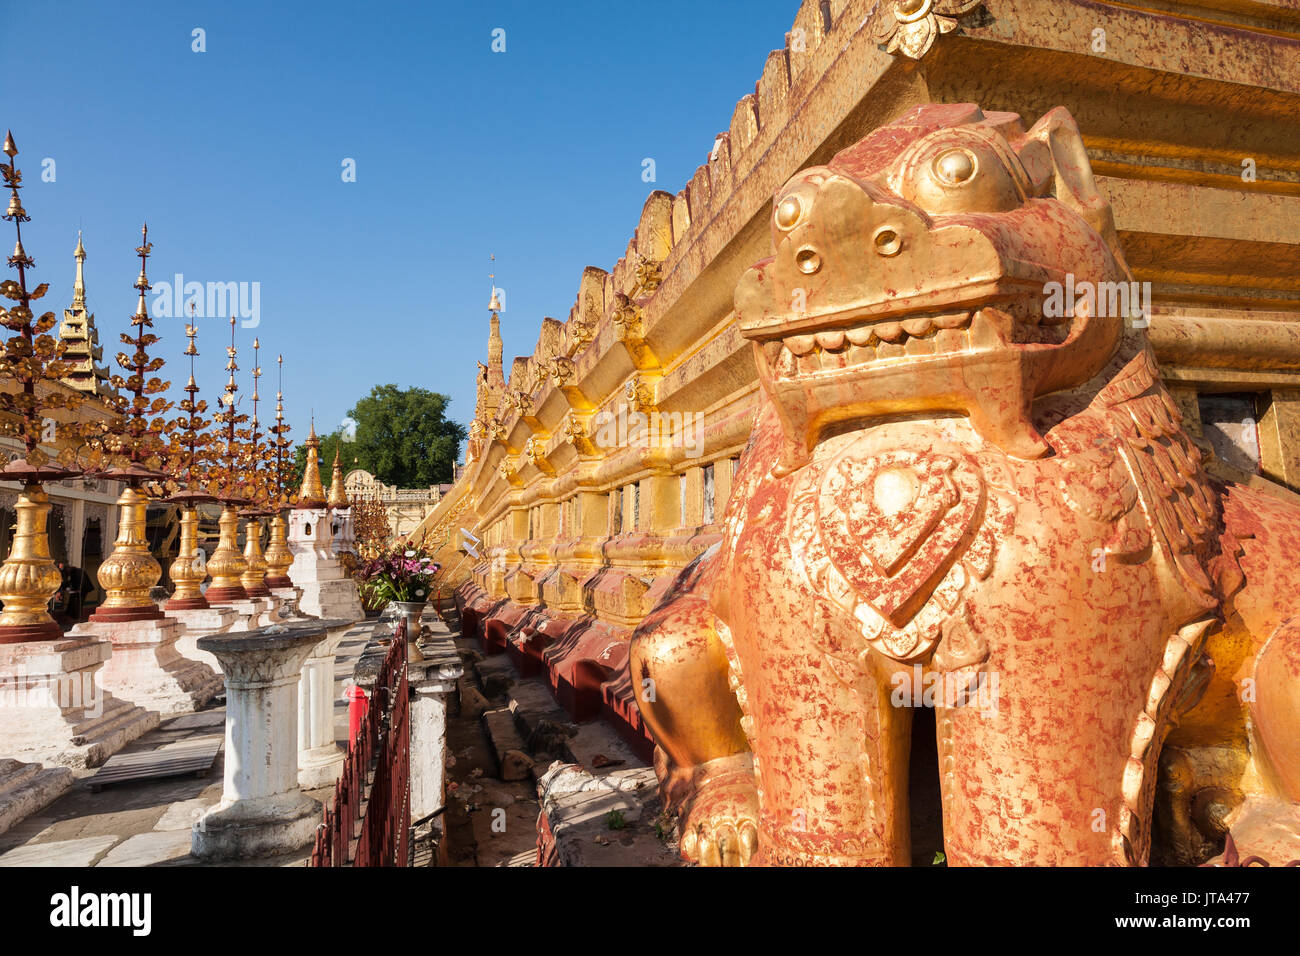 La piattaforma inferiore del buddista Pagoda di Shwezigon nella città di Nyaung-U vicino a Bagan in Birmania centrale con un leone chinthe statua Foto Stock